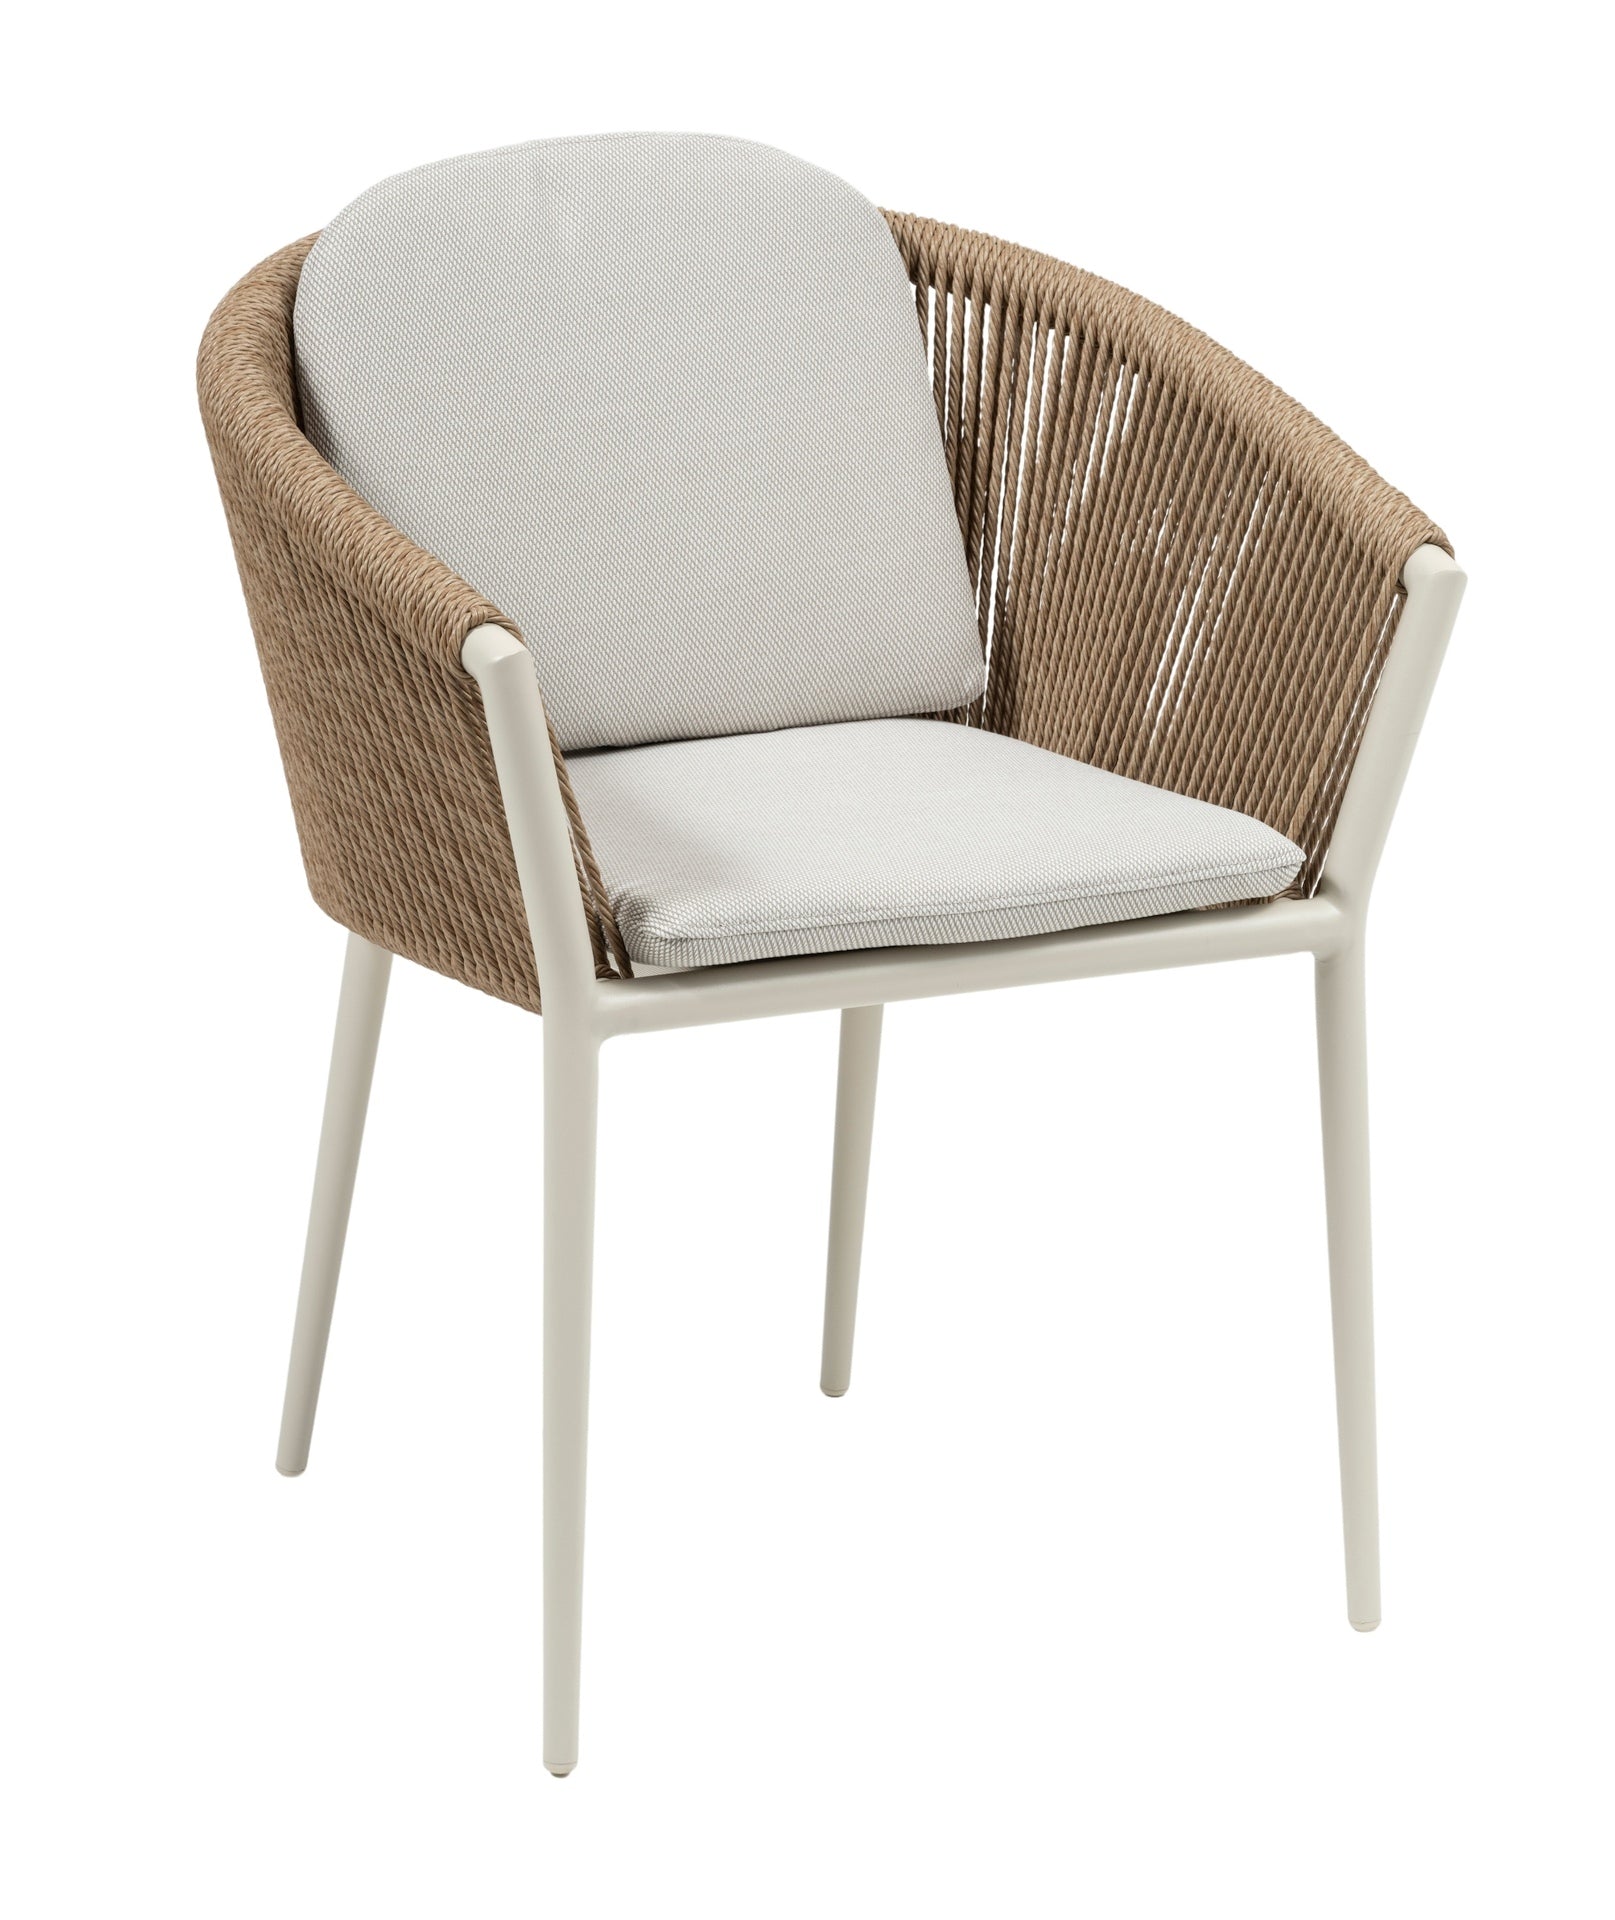 Eleganter 'Cassidy' Gartenstuhl mit weißem Metallgestell und natürlicher gedrehter Kunststoffschnur, ergänzt durch ein bequemes Sitz- und Rückenkissen, verfügbar bei Gartenmoebelshop.at - mit weißem Hintergrund